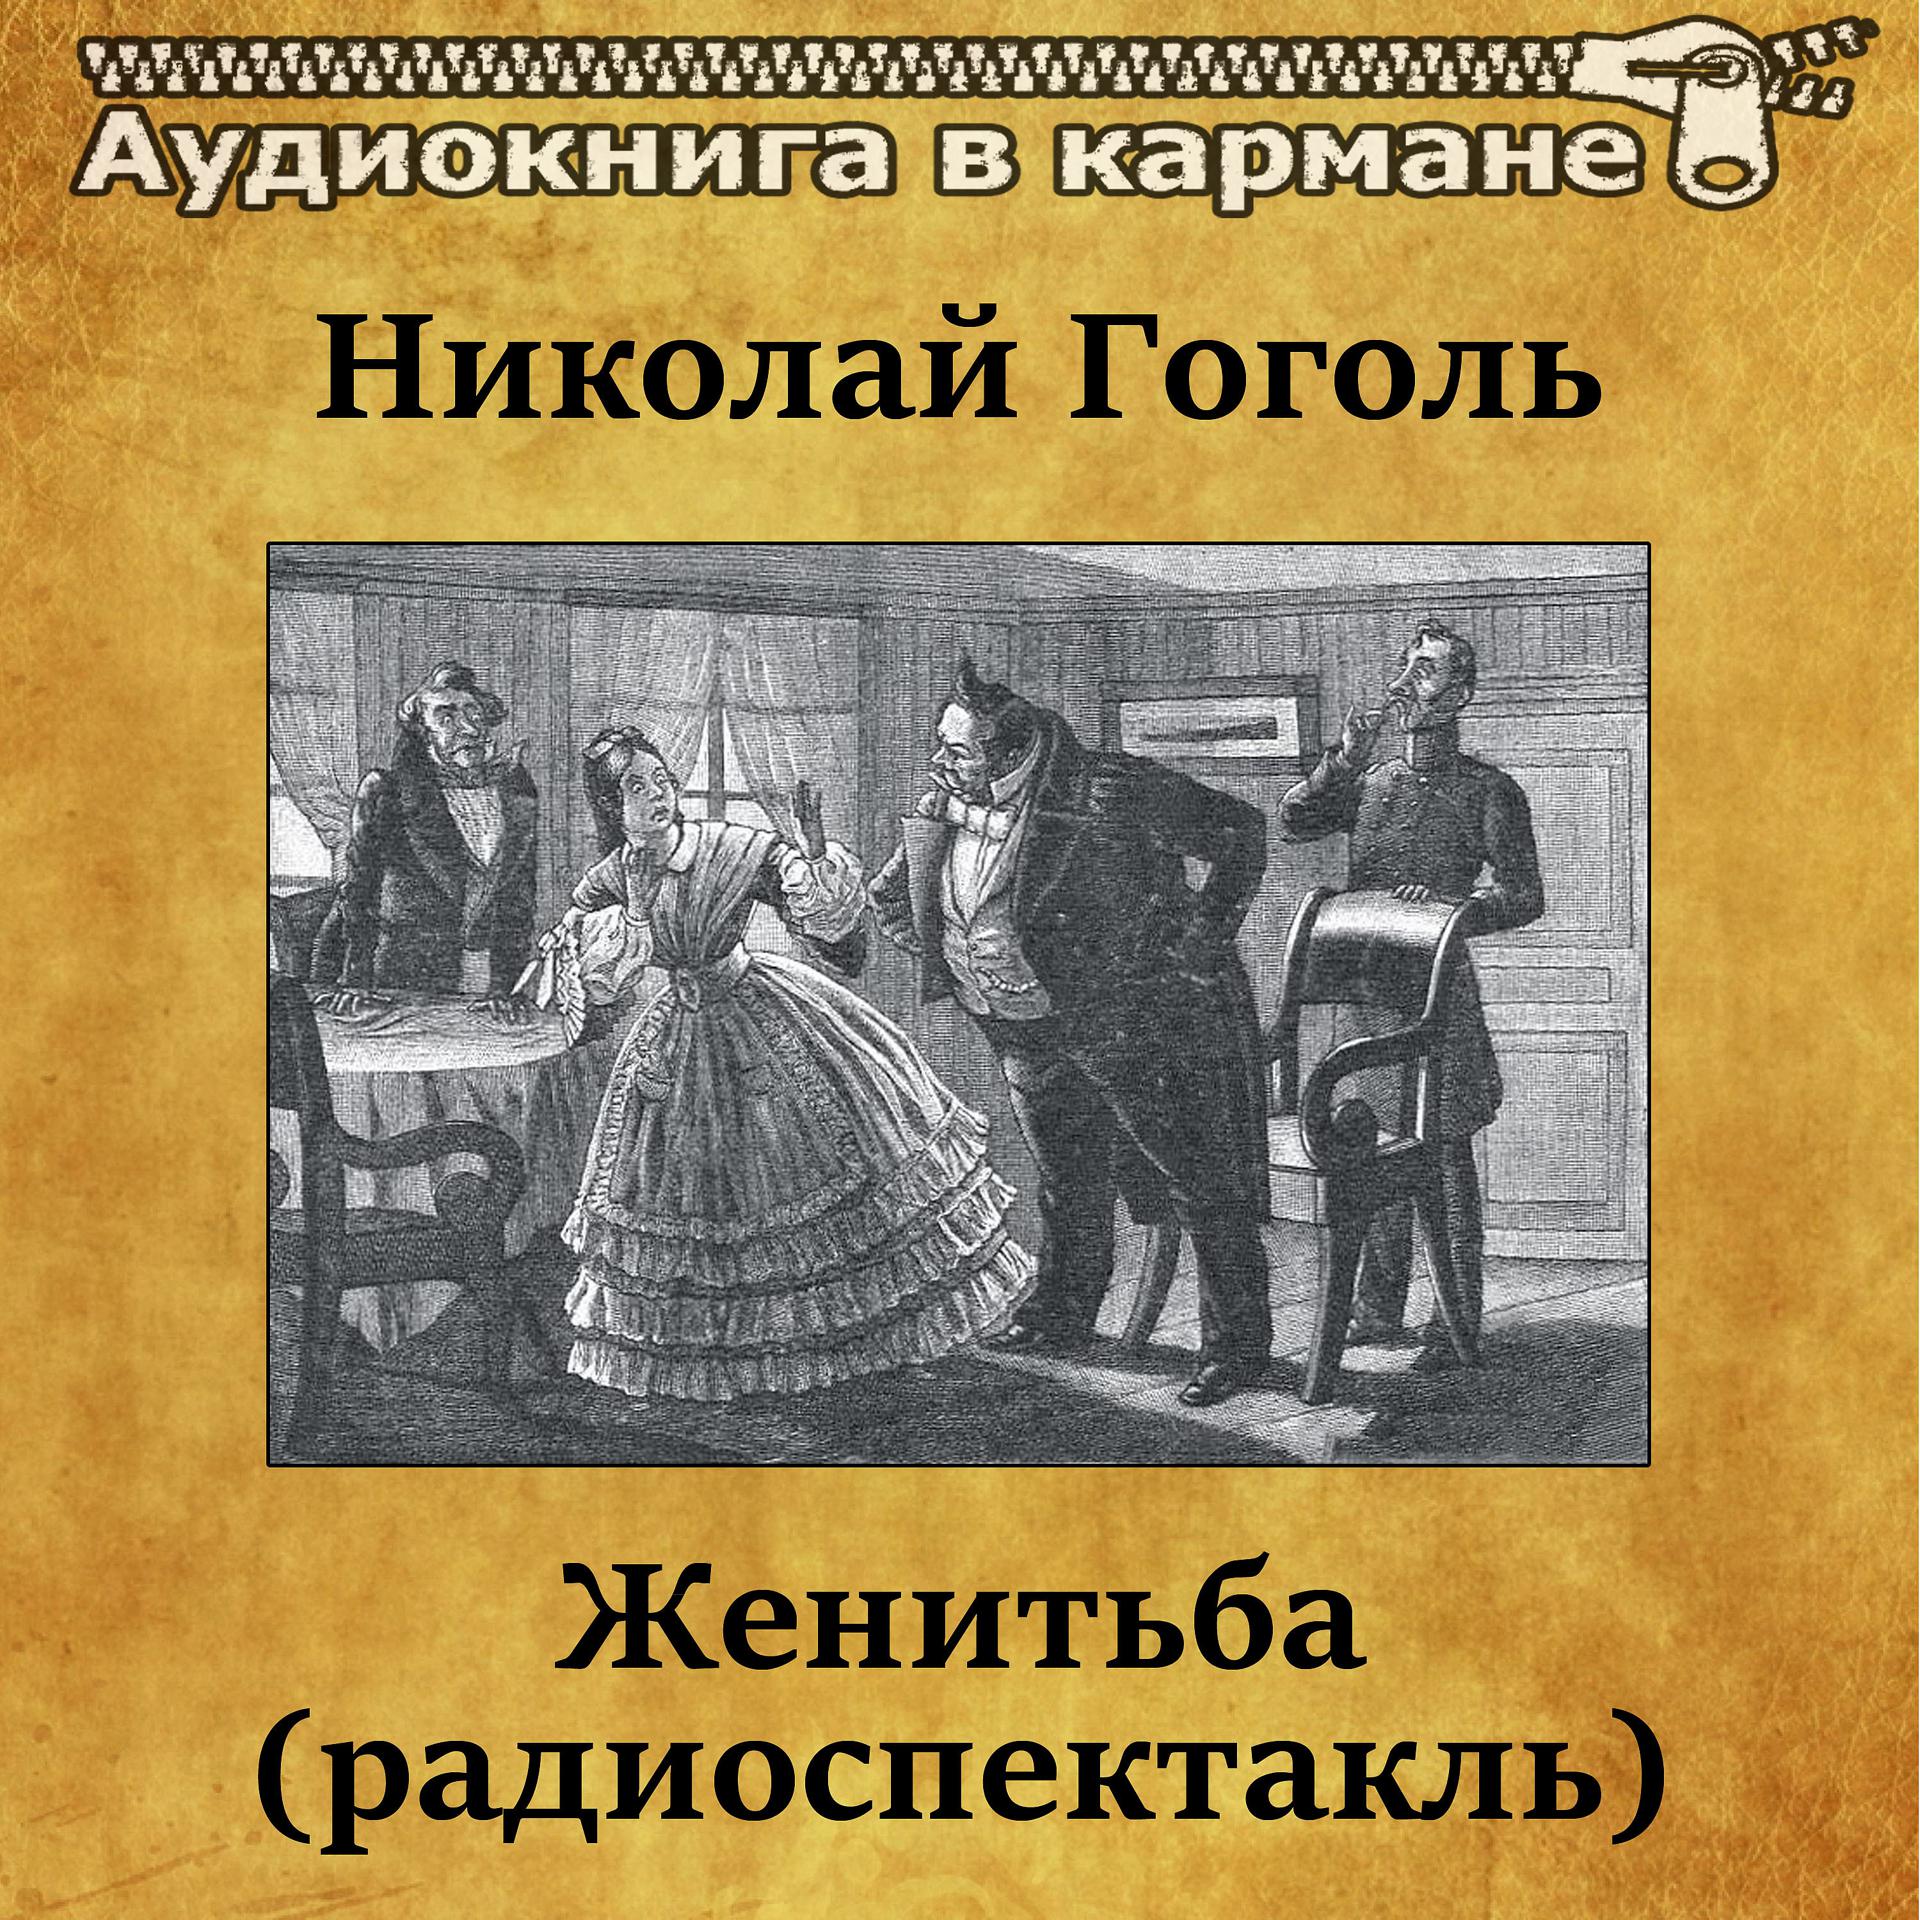 Постер к треку Аудиокнига в кармане, Лев Дуров - Женитьба, Чт. 7